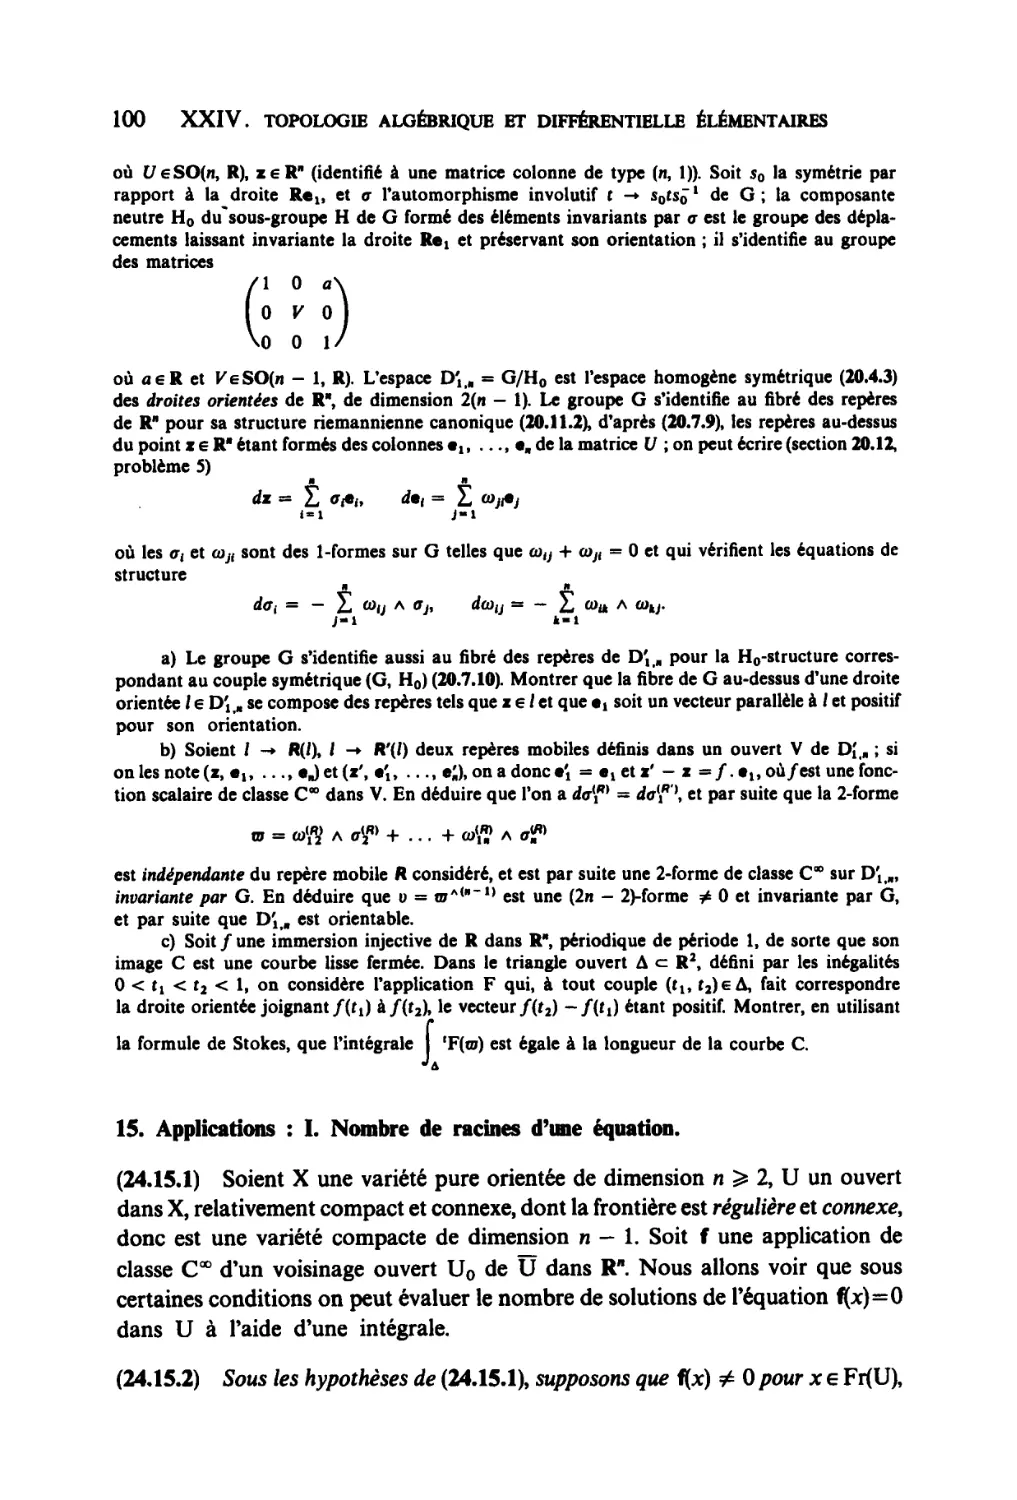 15. Applications : I. Nombre de racines d'une équation